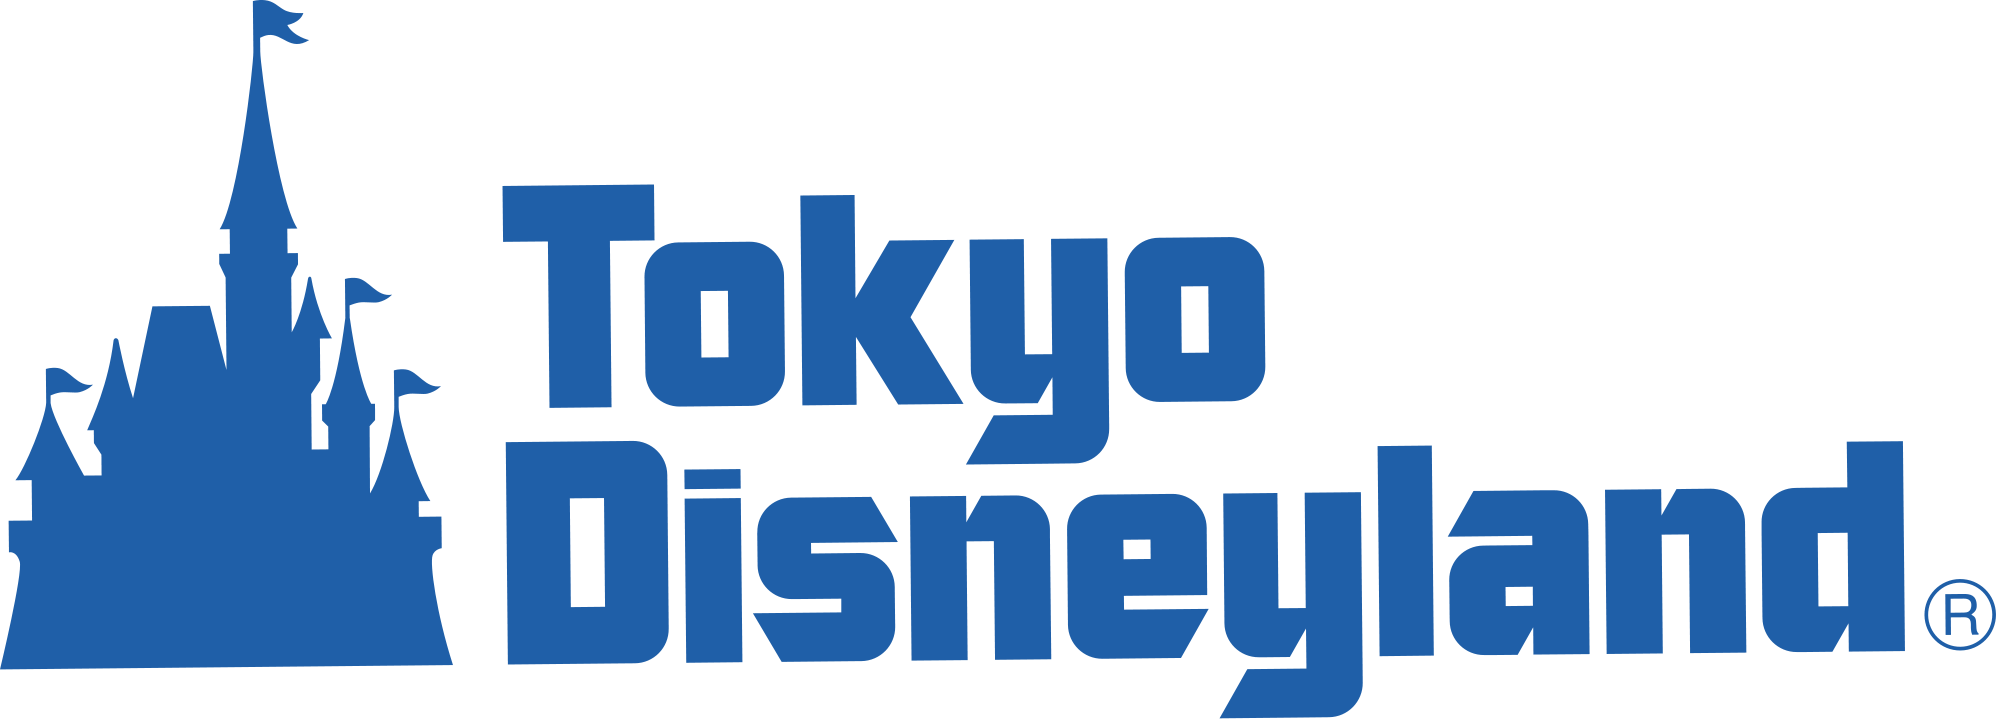 Tokyo Disneyland Logo - Tokyo Disneyland | Logopedia | FANDOM powered by Wikia